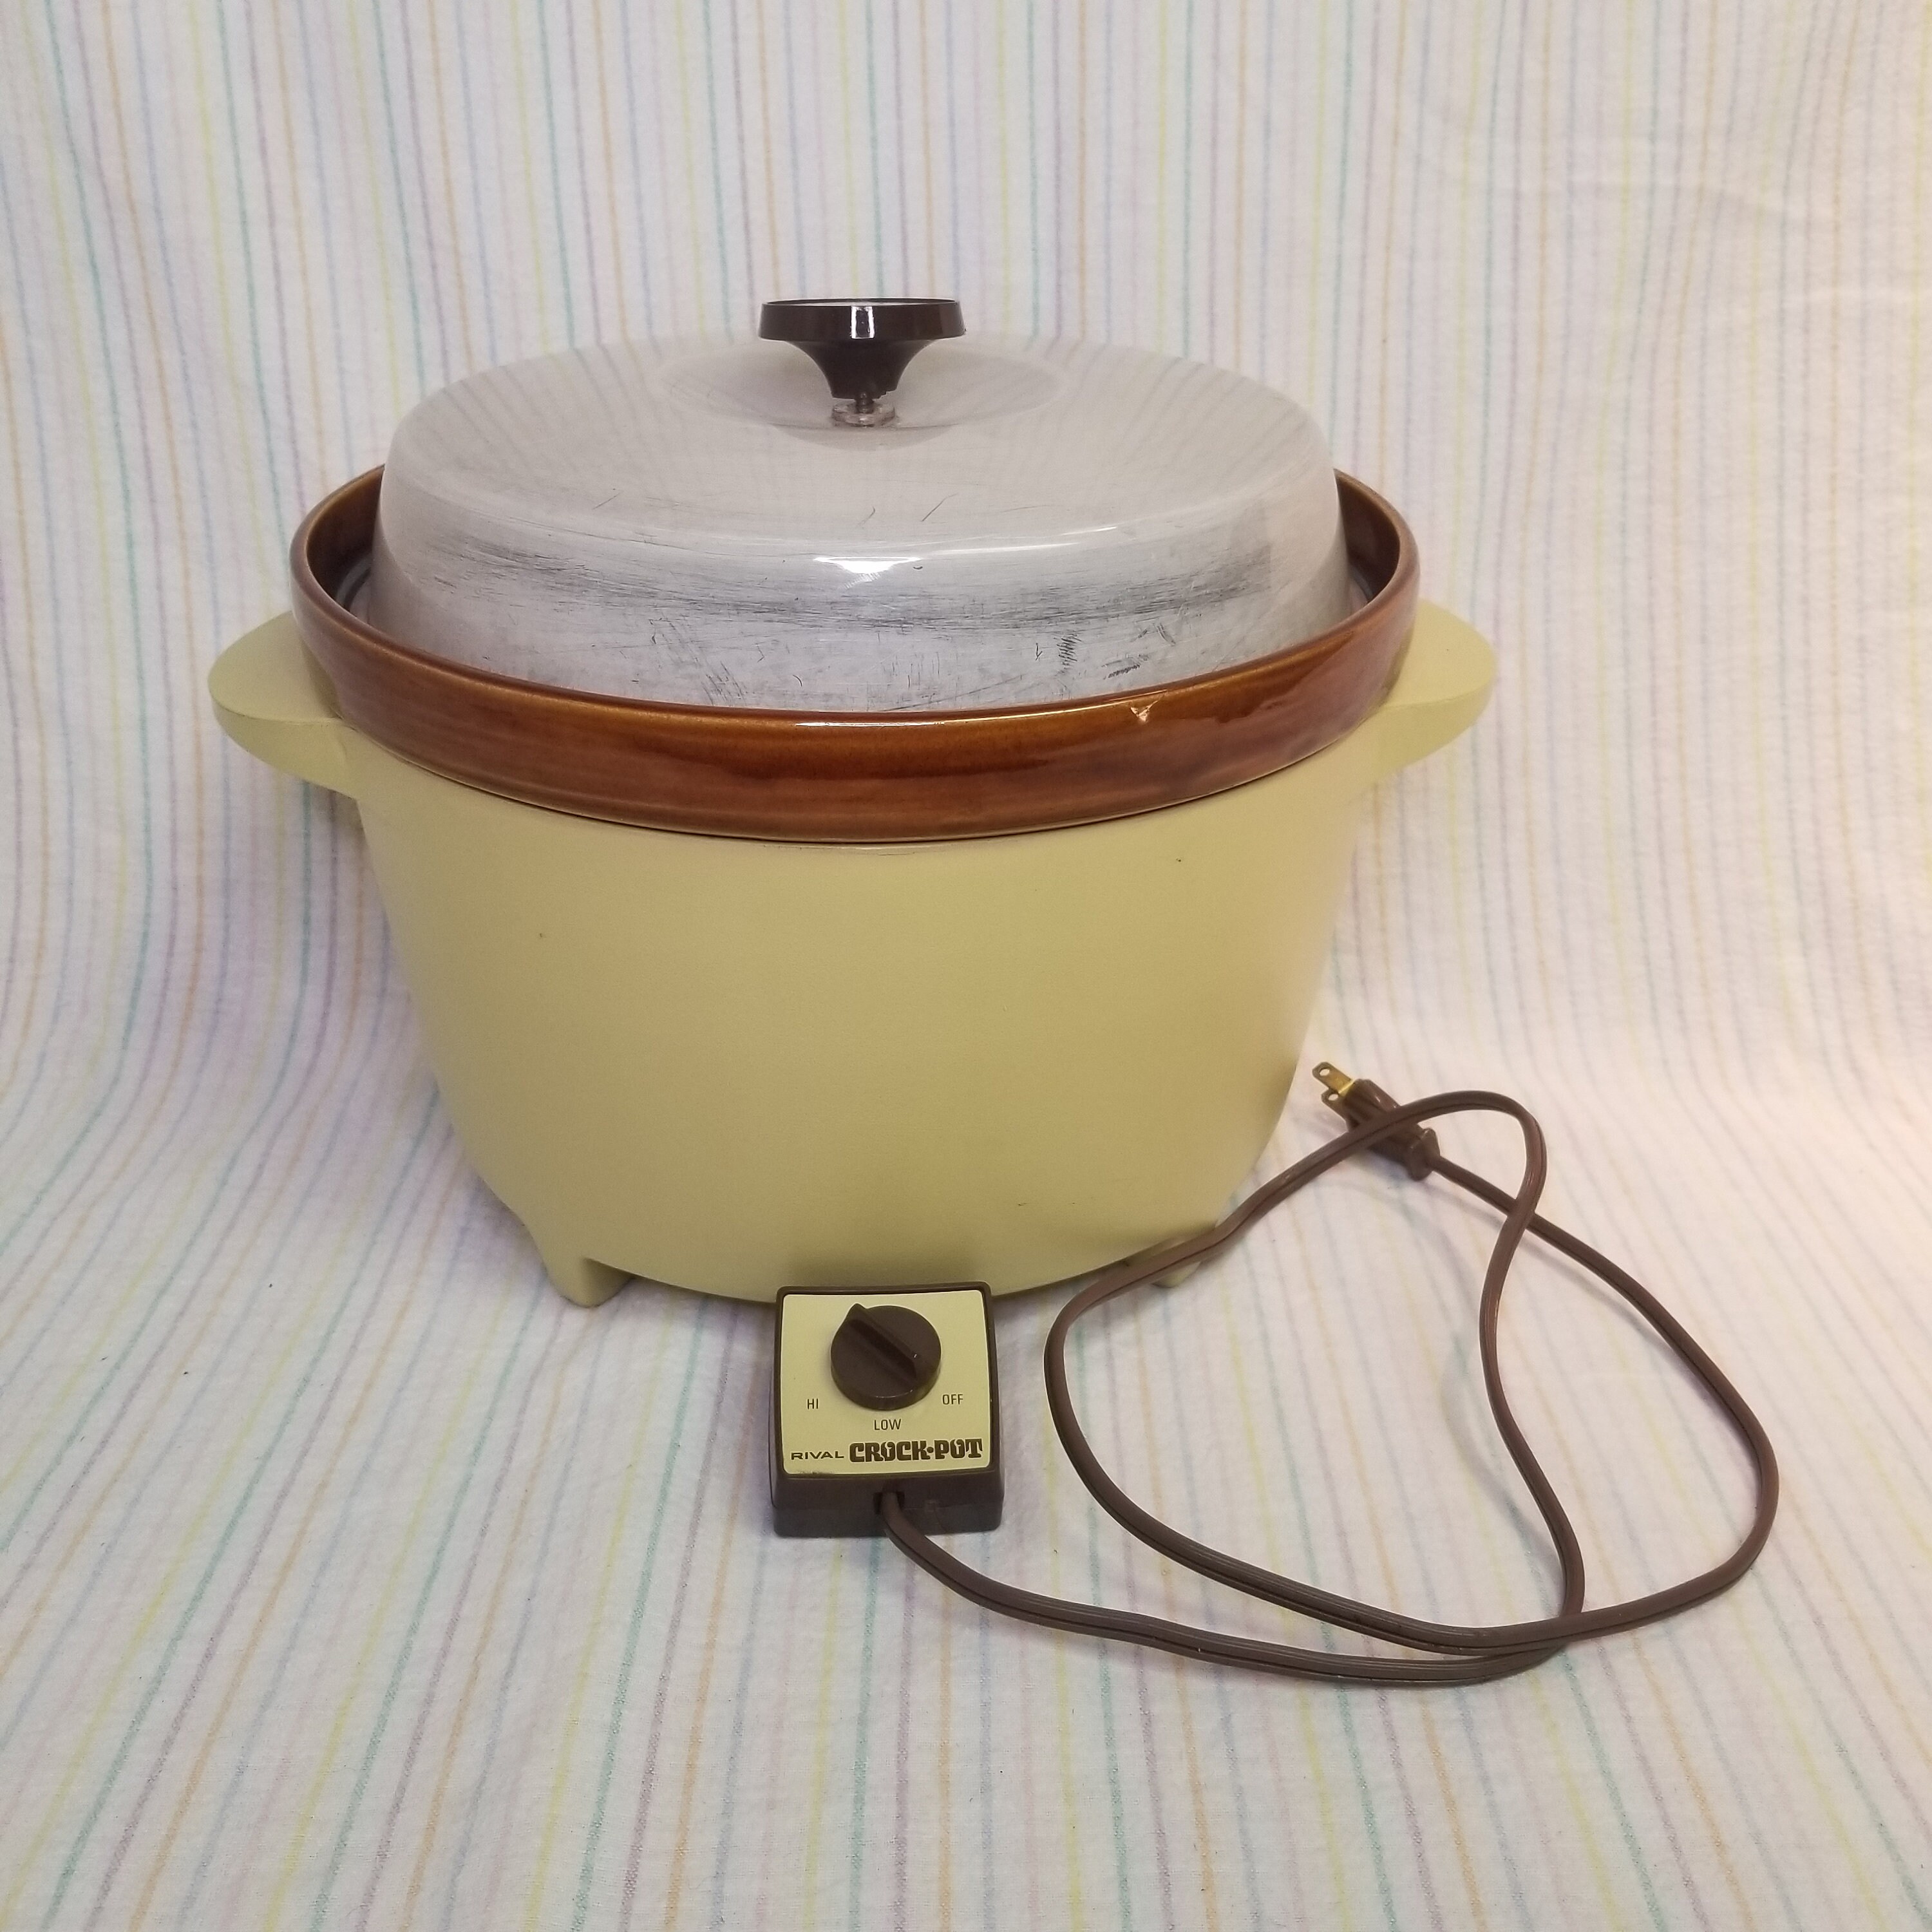 Vintage Rival Mini Crock Pot Crock-ette Retro 1 Qt Slow Cooker